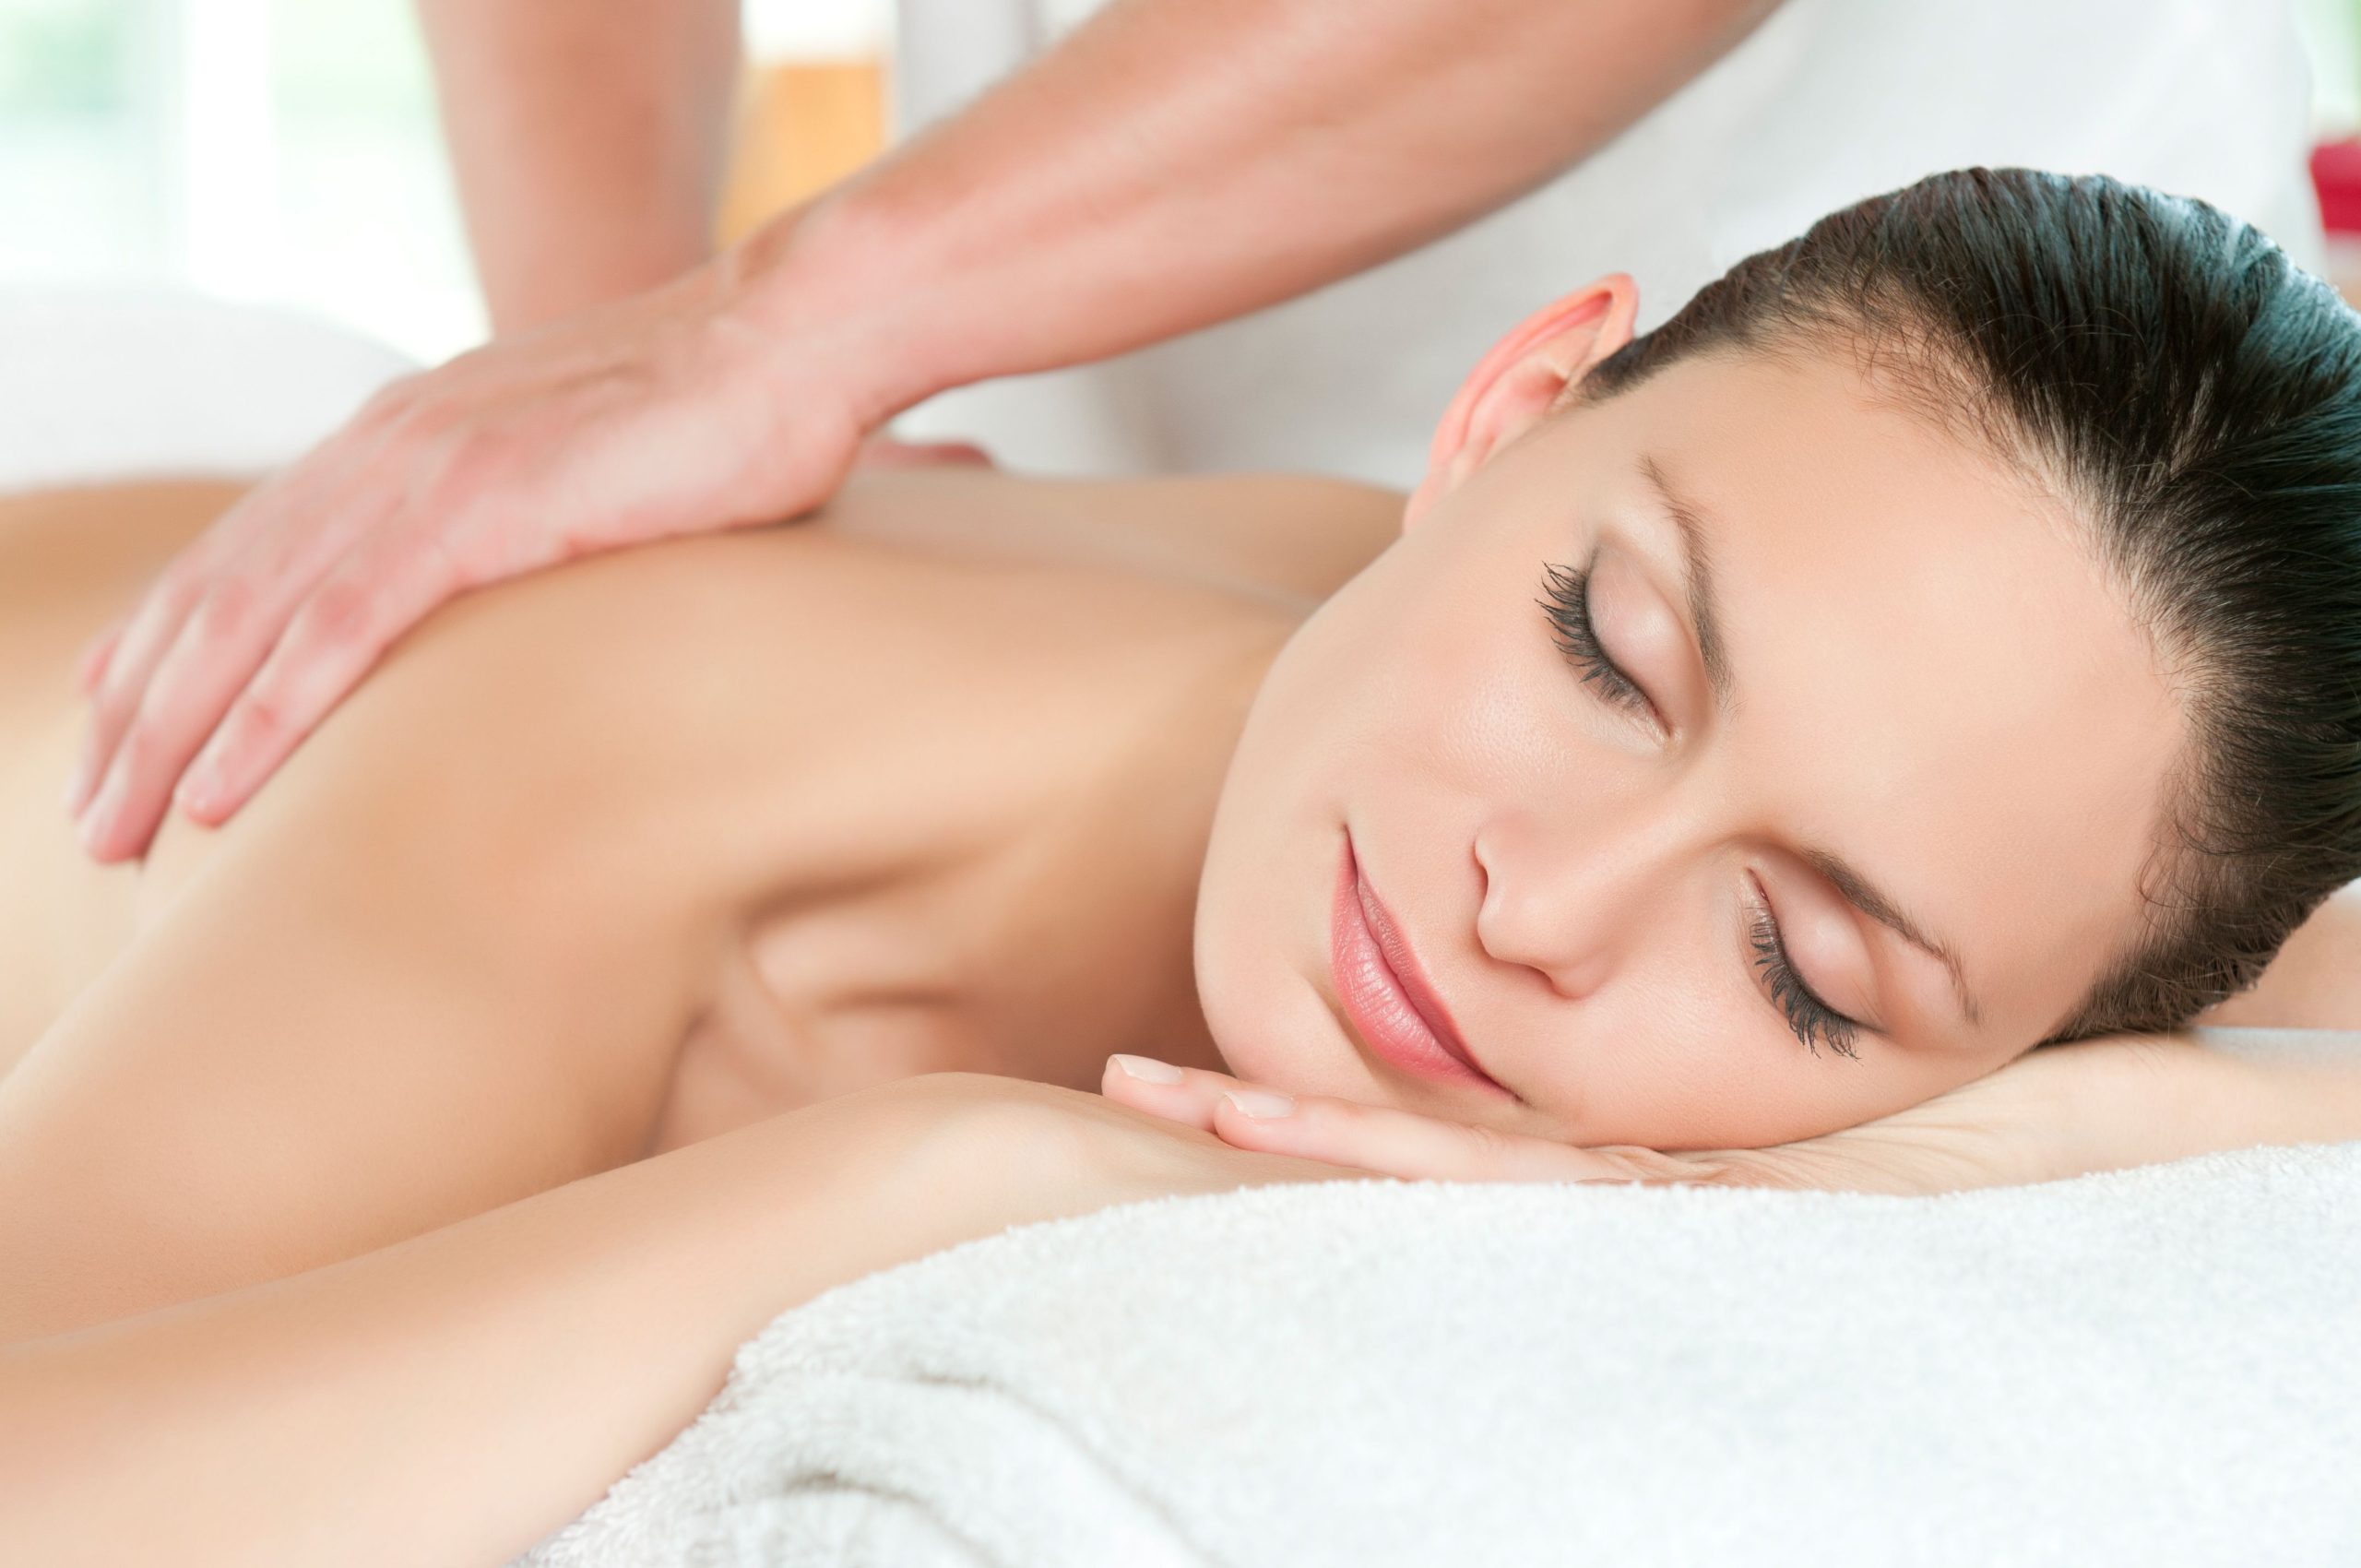 Relaxation Massage Therapist Near Silverlake, WA